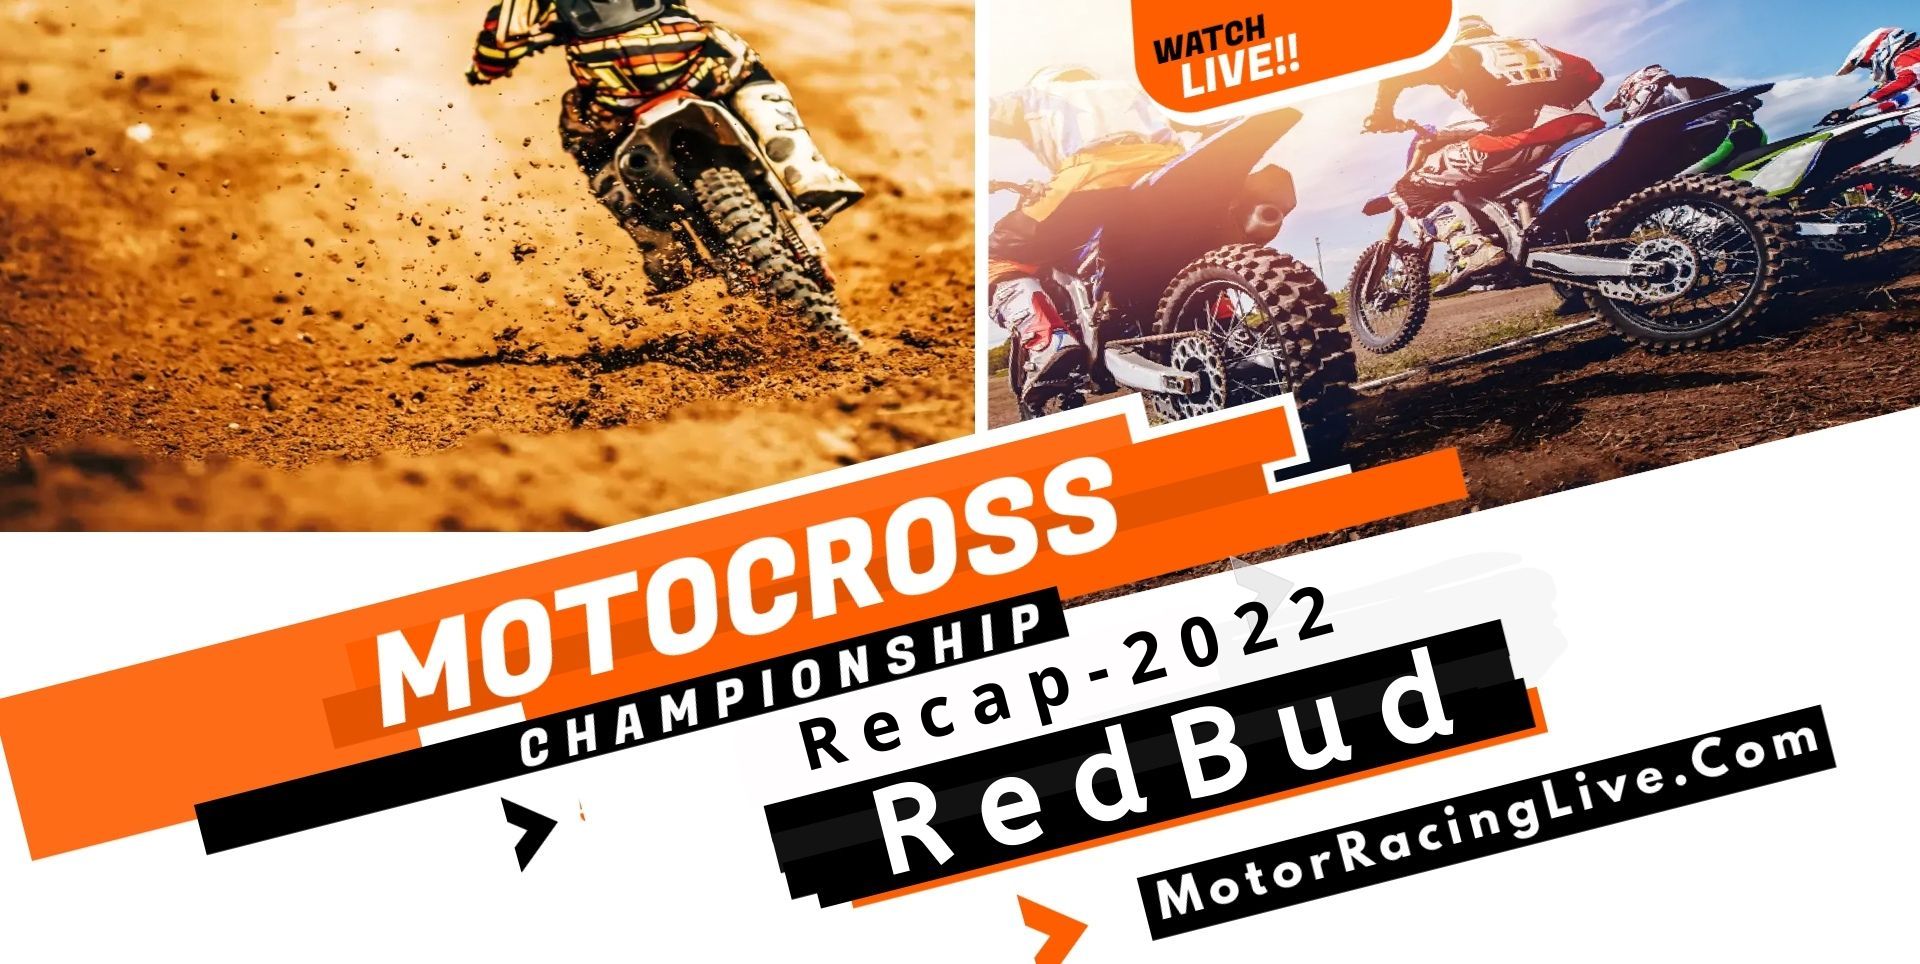 RedBud Recap 2022 Motocross